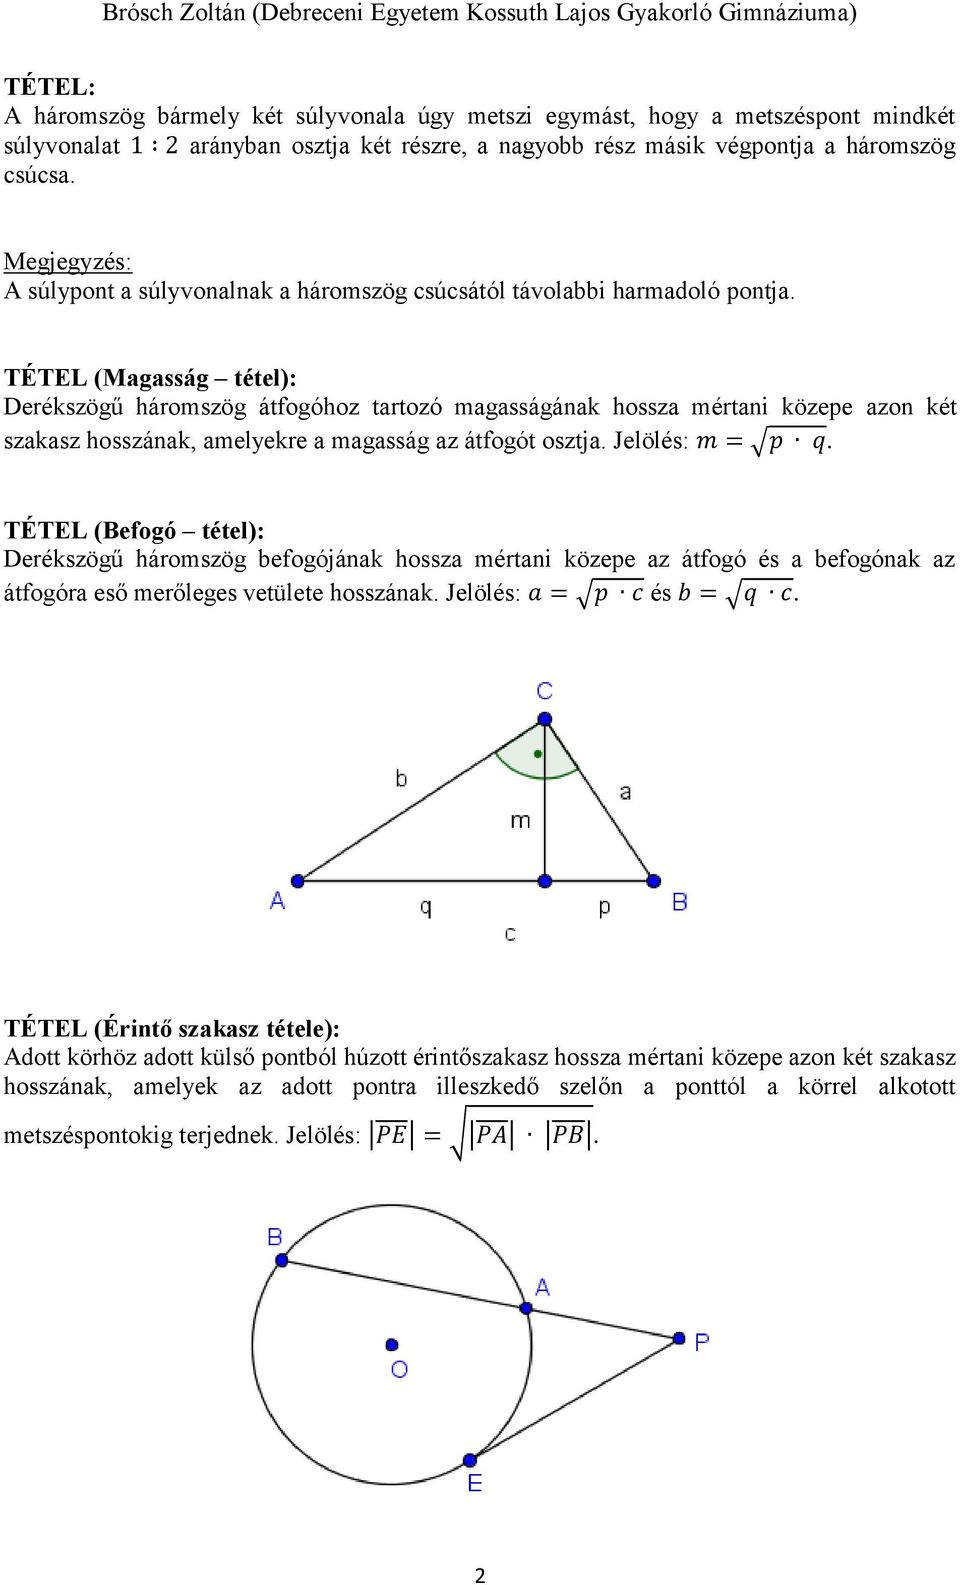 TÉTEL (Magasság tétel): Derékszögű háromszög átfogóhoz tartozó magasságának hossza mértani közepe azon két szakasz hosszának, amelyekre a magasság az átfogót osztja. Jelölés: m = p q.